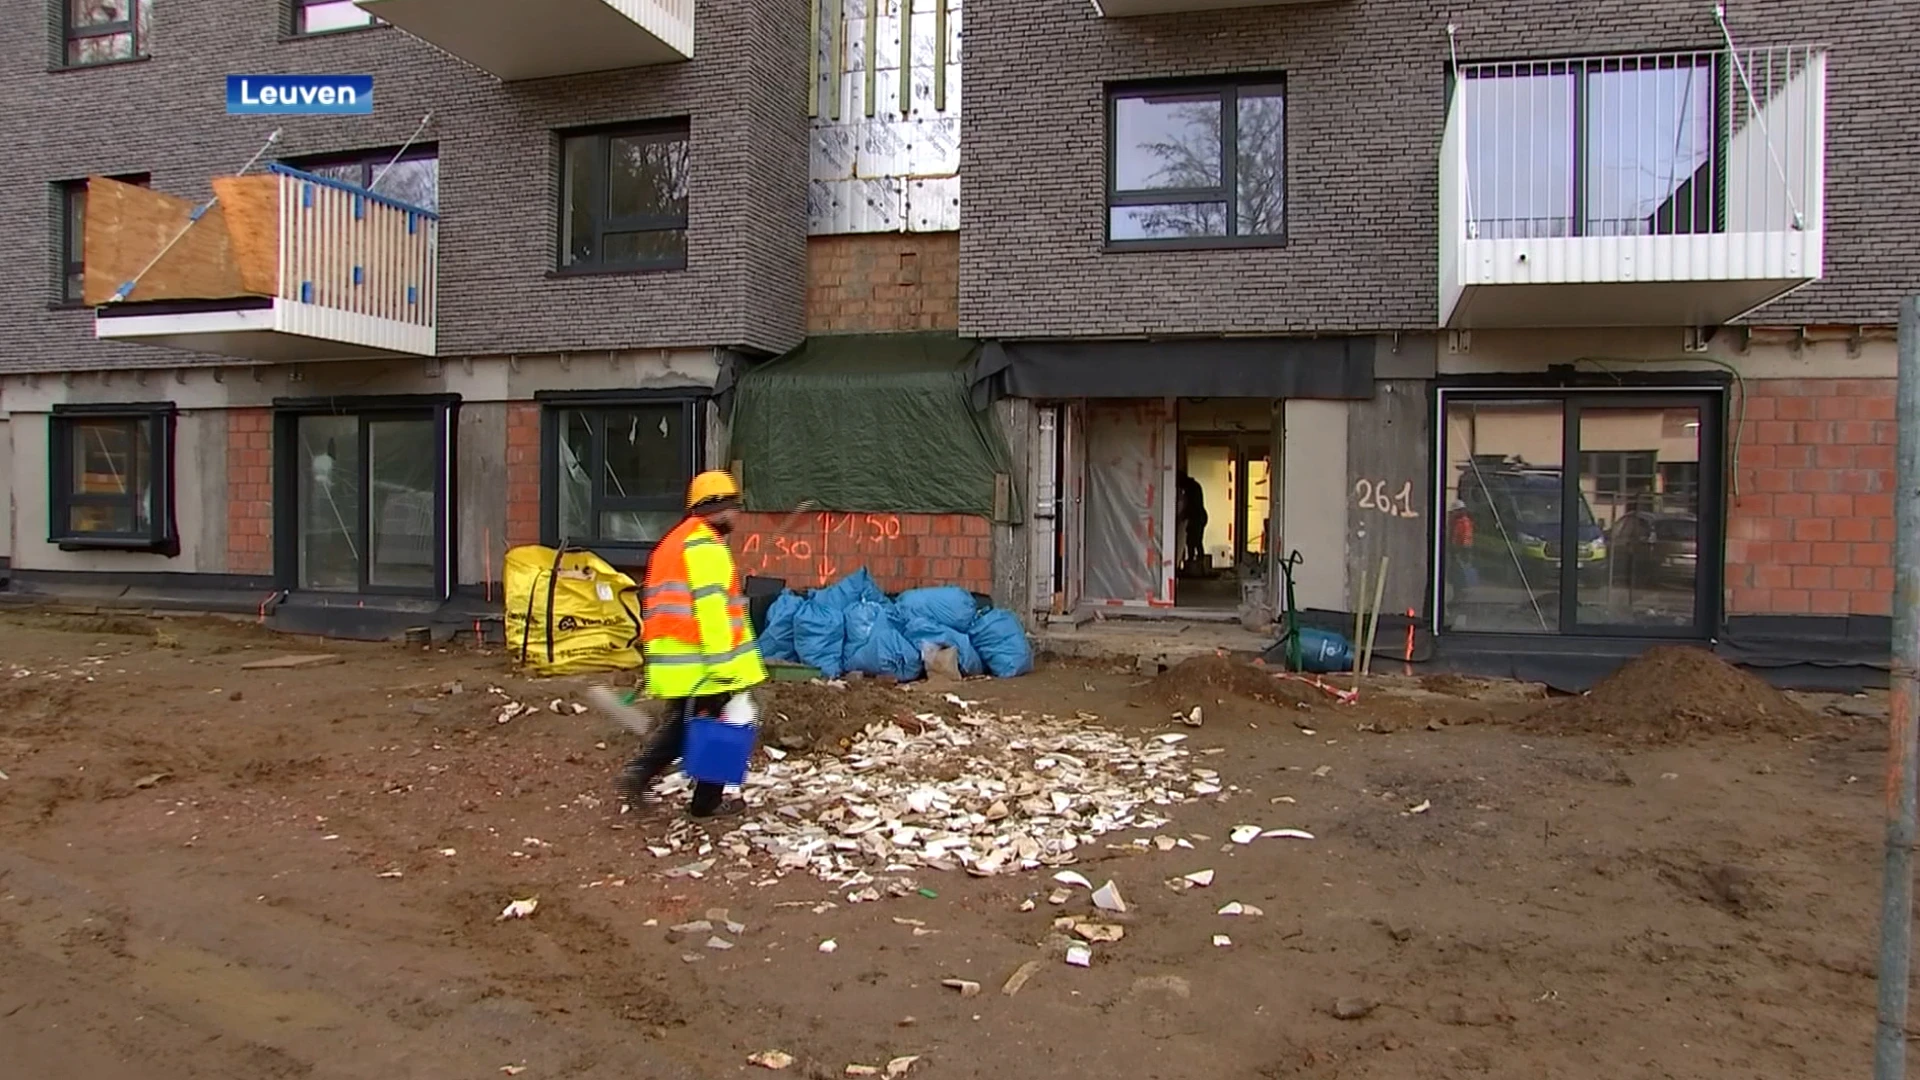 Dijledal gaat de komende jaren 400 sociale woningen bouwen of renoveren in Leuven